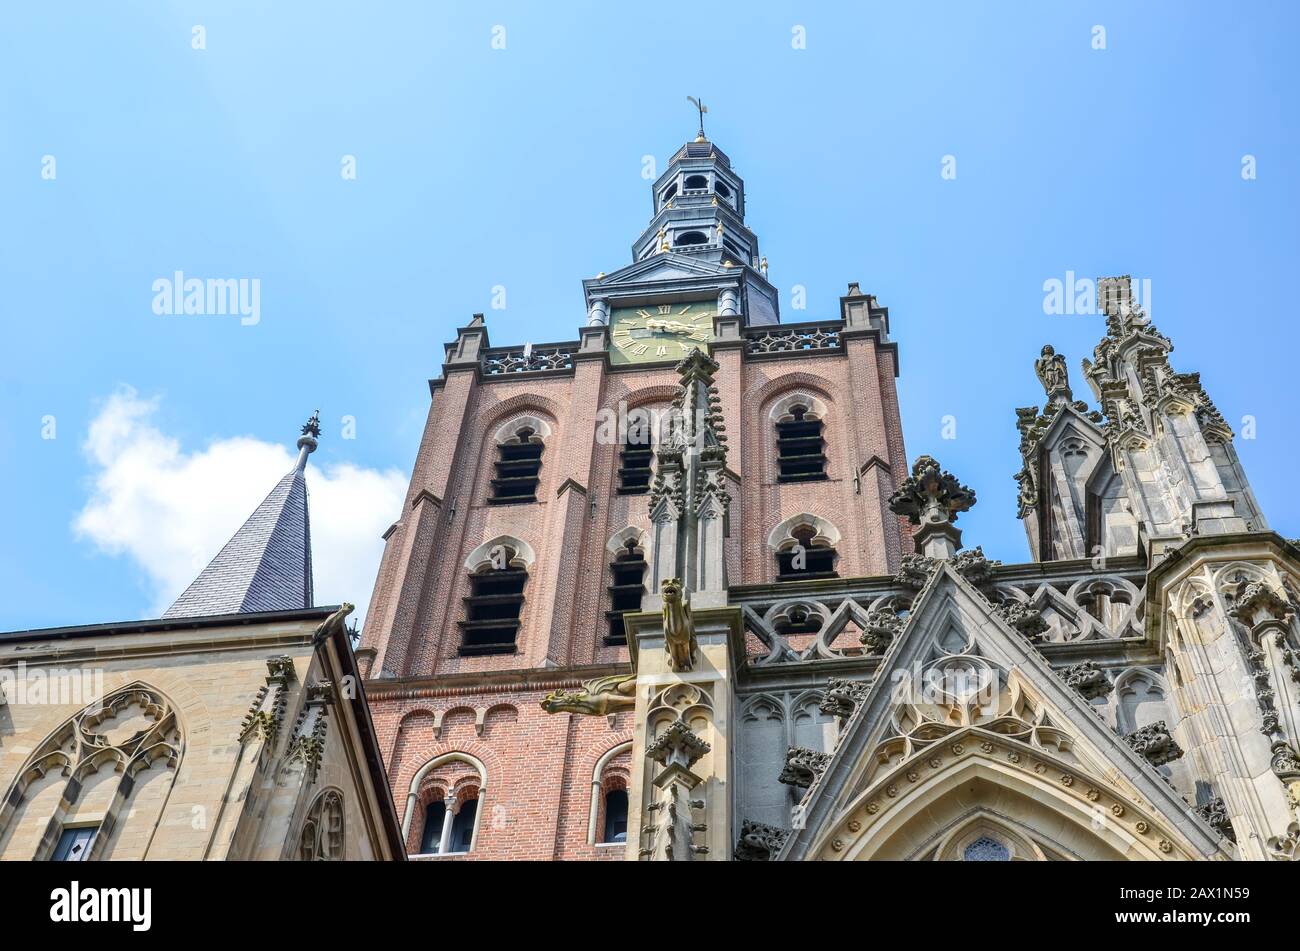 St.-John-Kathedrale in Hertogenbosch, Nordbrabant, Niederlande. Holländische Gotik, die größte katholische Kirche der Niederlande. Dominant im Stadtzentrum. Stockfoto